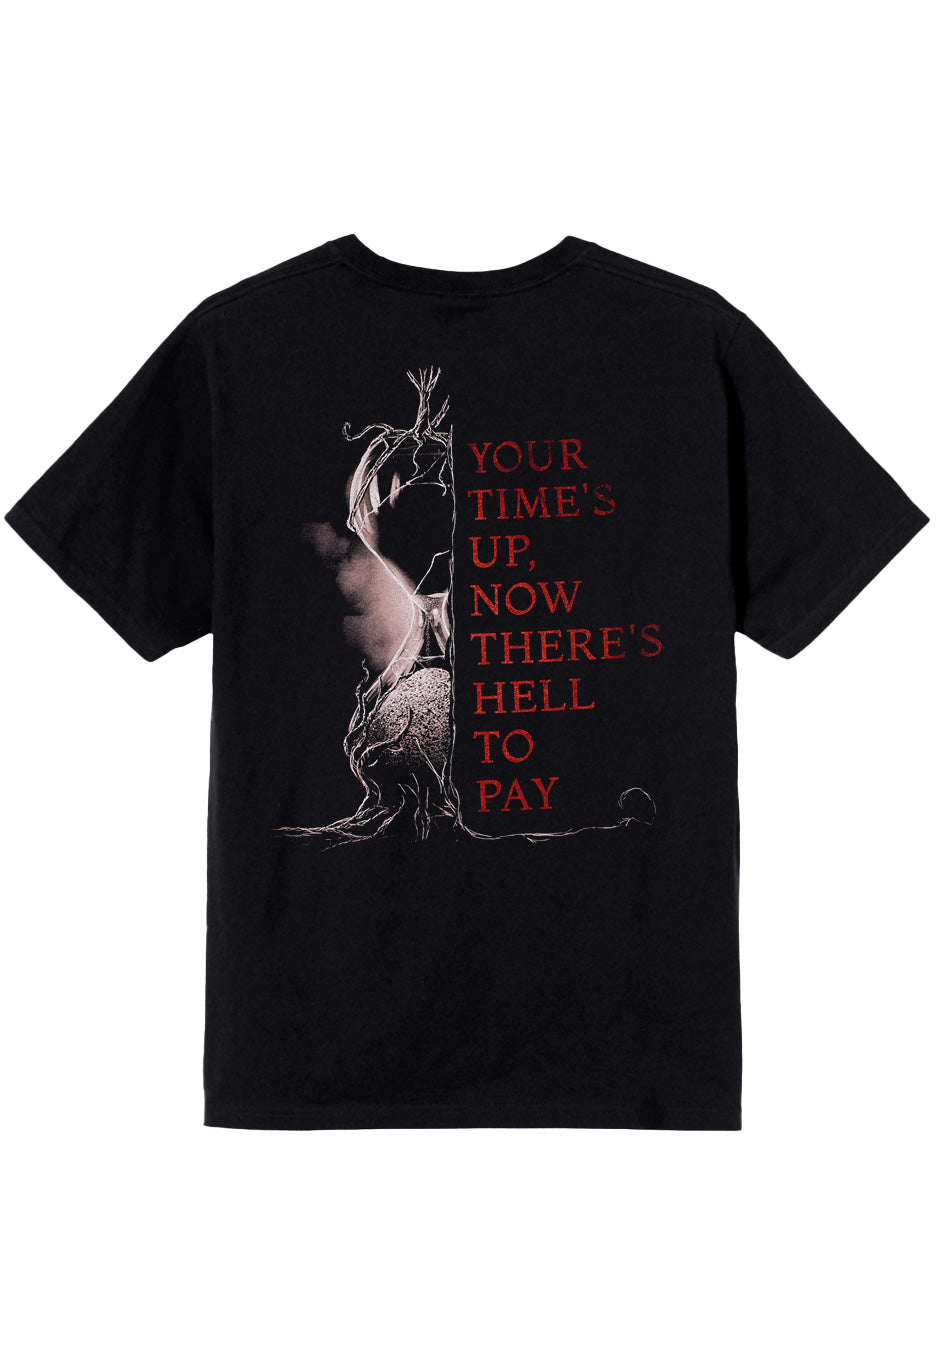 In Flames - Meet Your Maker - T-Shirt